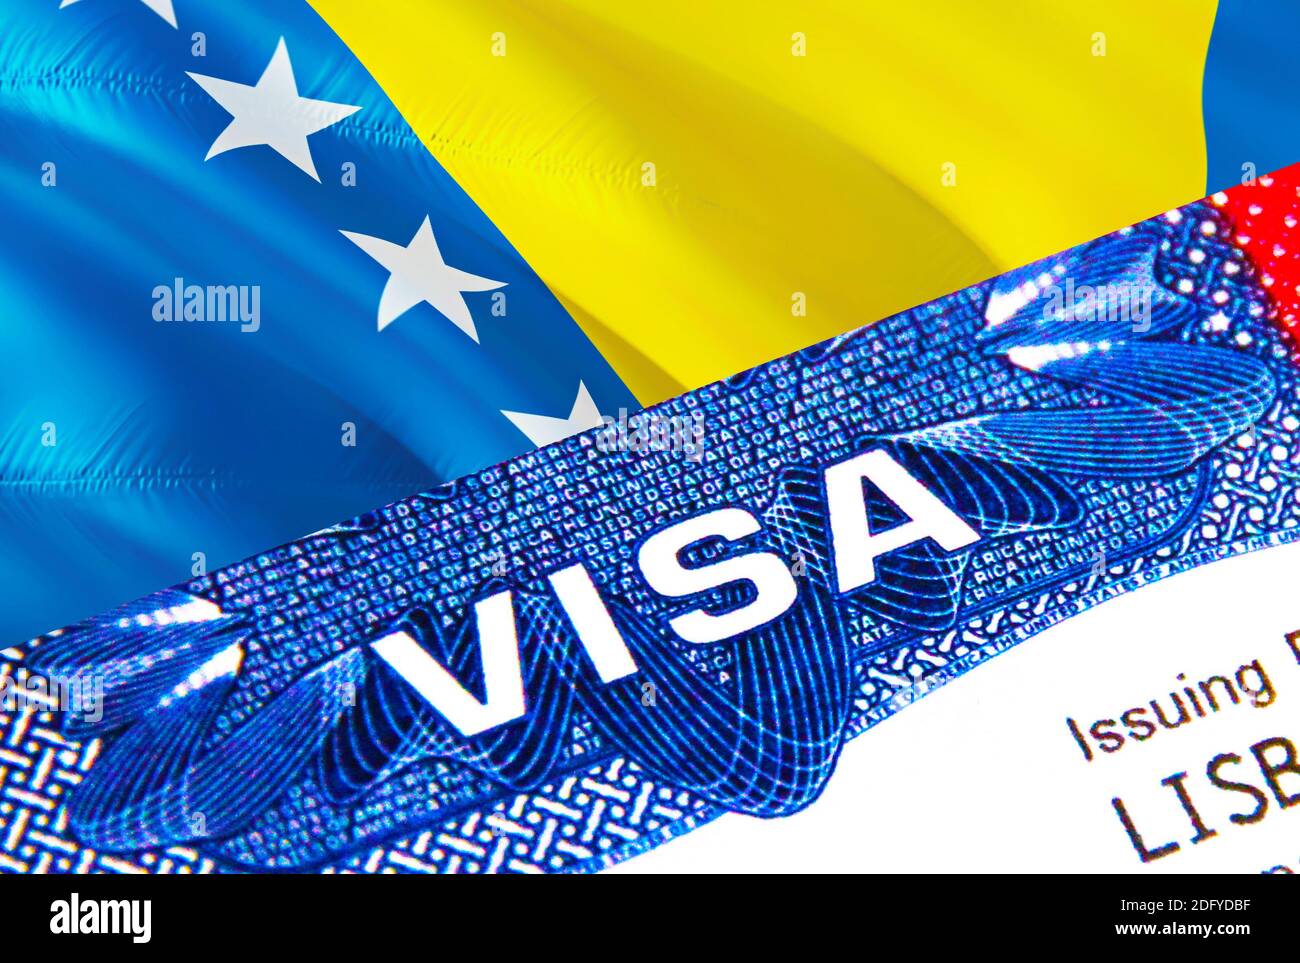 Bosnie-Herzégovine Visa en passeport. Visa d'immigration des États-Unis  pour les citoyens de Bosnie-Herzégovine se concentrant sur le mot VISA.  Voyager Bosnie-Herzégovine Photo Stock - Alamy